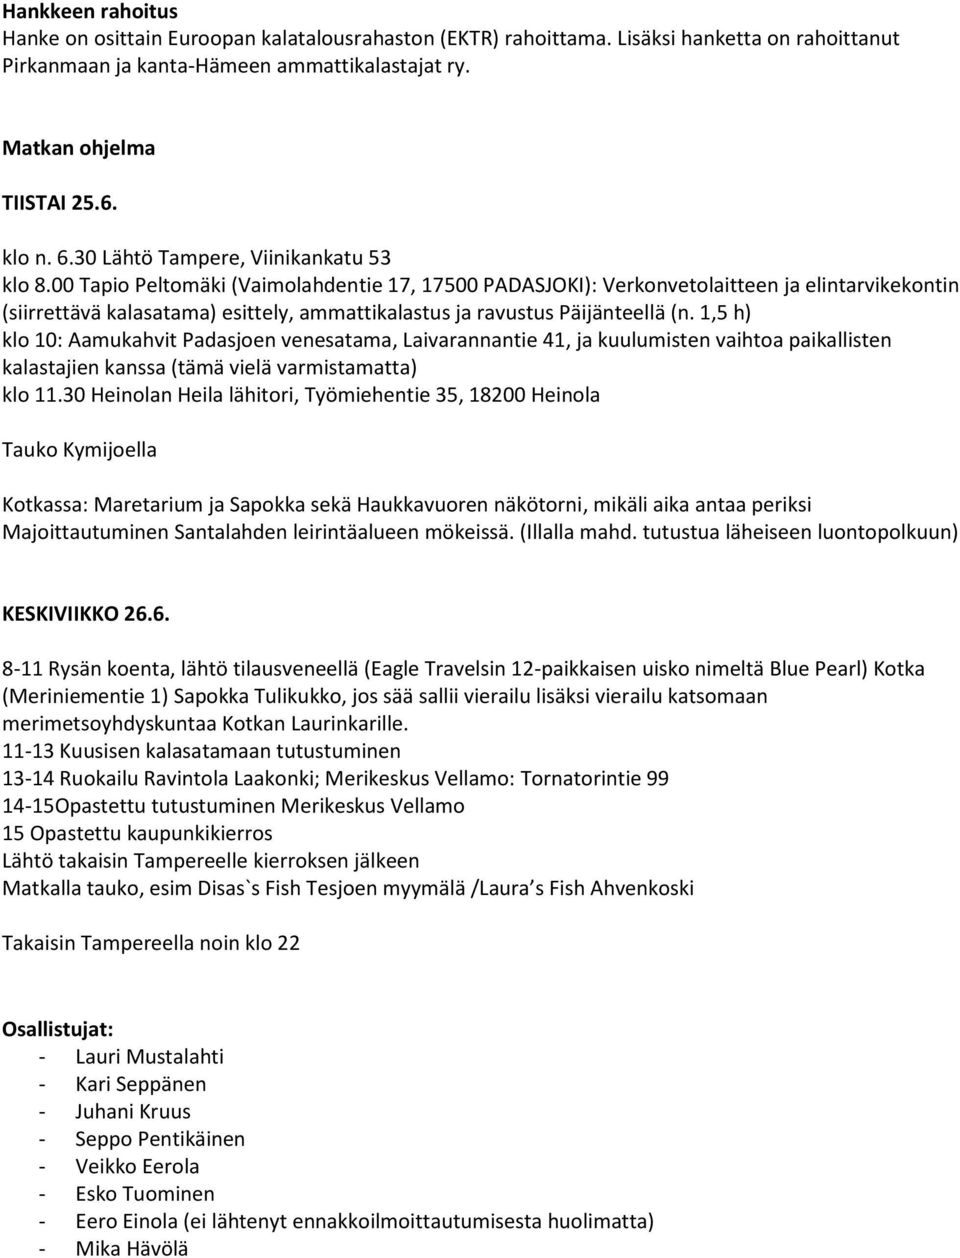 00 Tapio Peltomäki (Vaimolahdentie 17, 17500 PADASJOKI): Verkonvetolaitteen ja elintarvikekontin (siirrettävä kalasatama) esittely, ammattikalastus ja ravustus Päijänteellä (n.